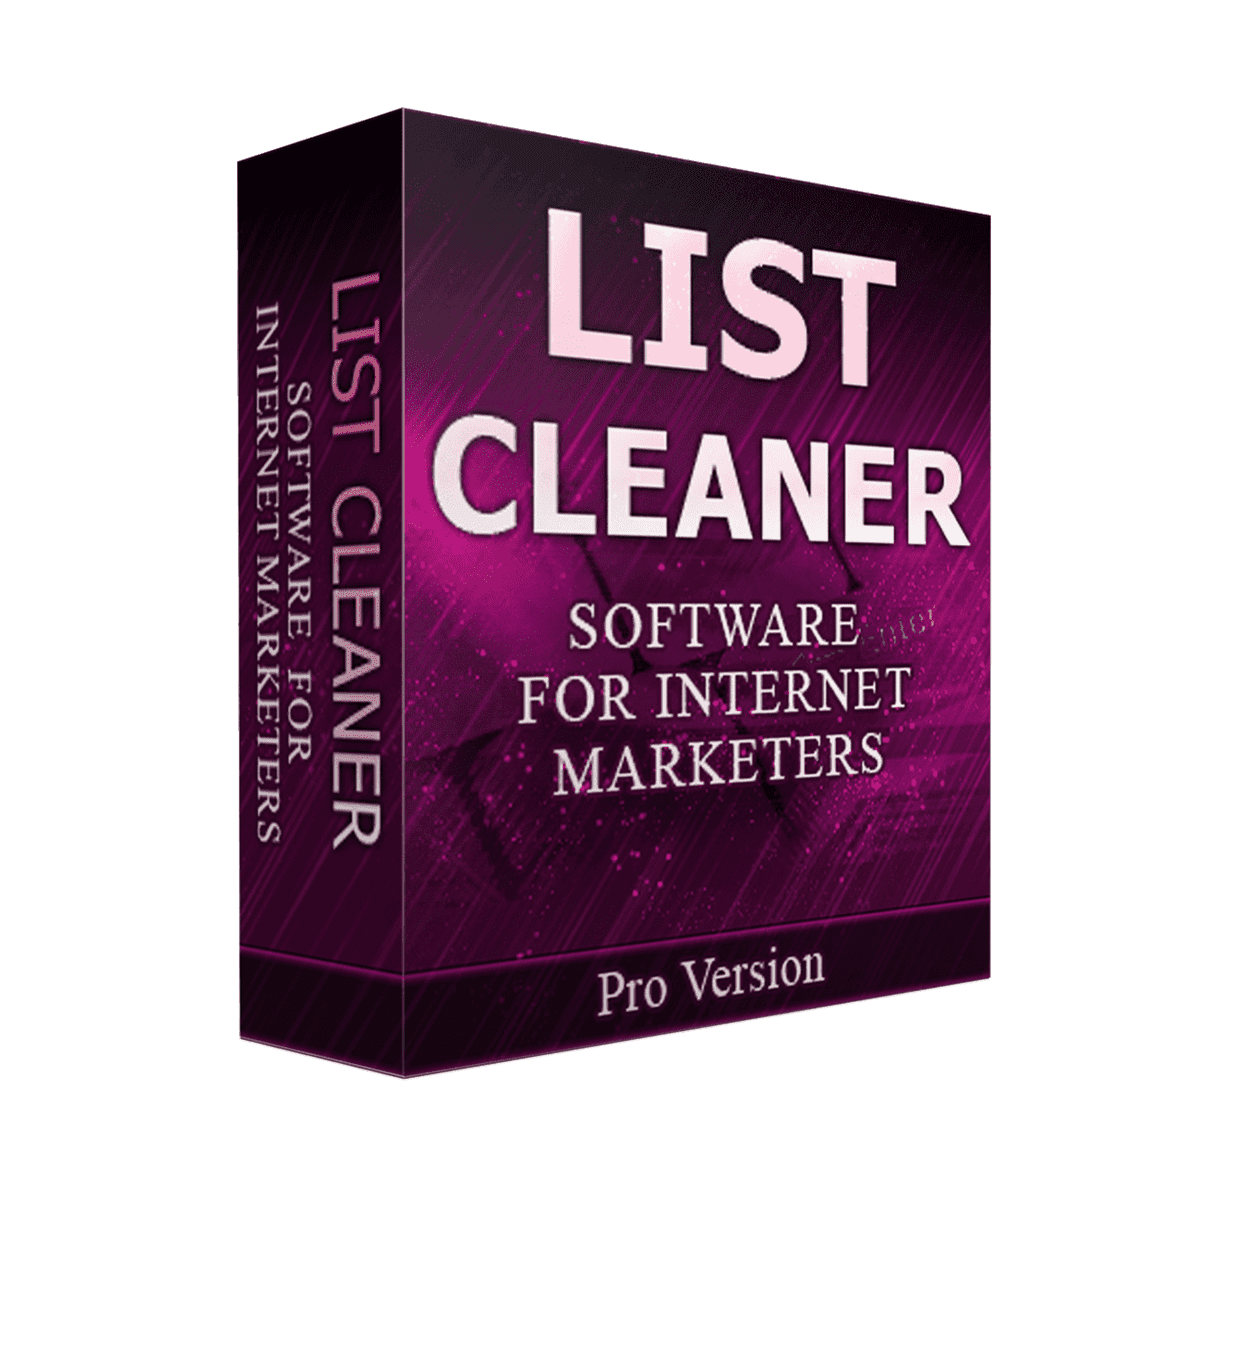 List Cleaner V2